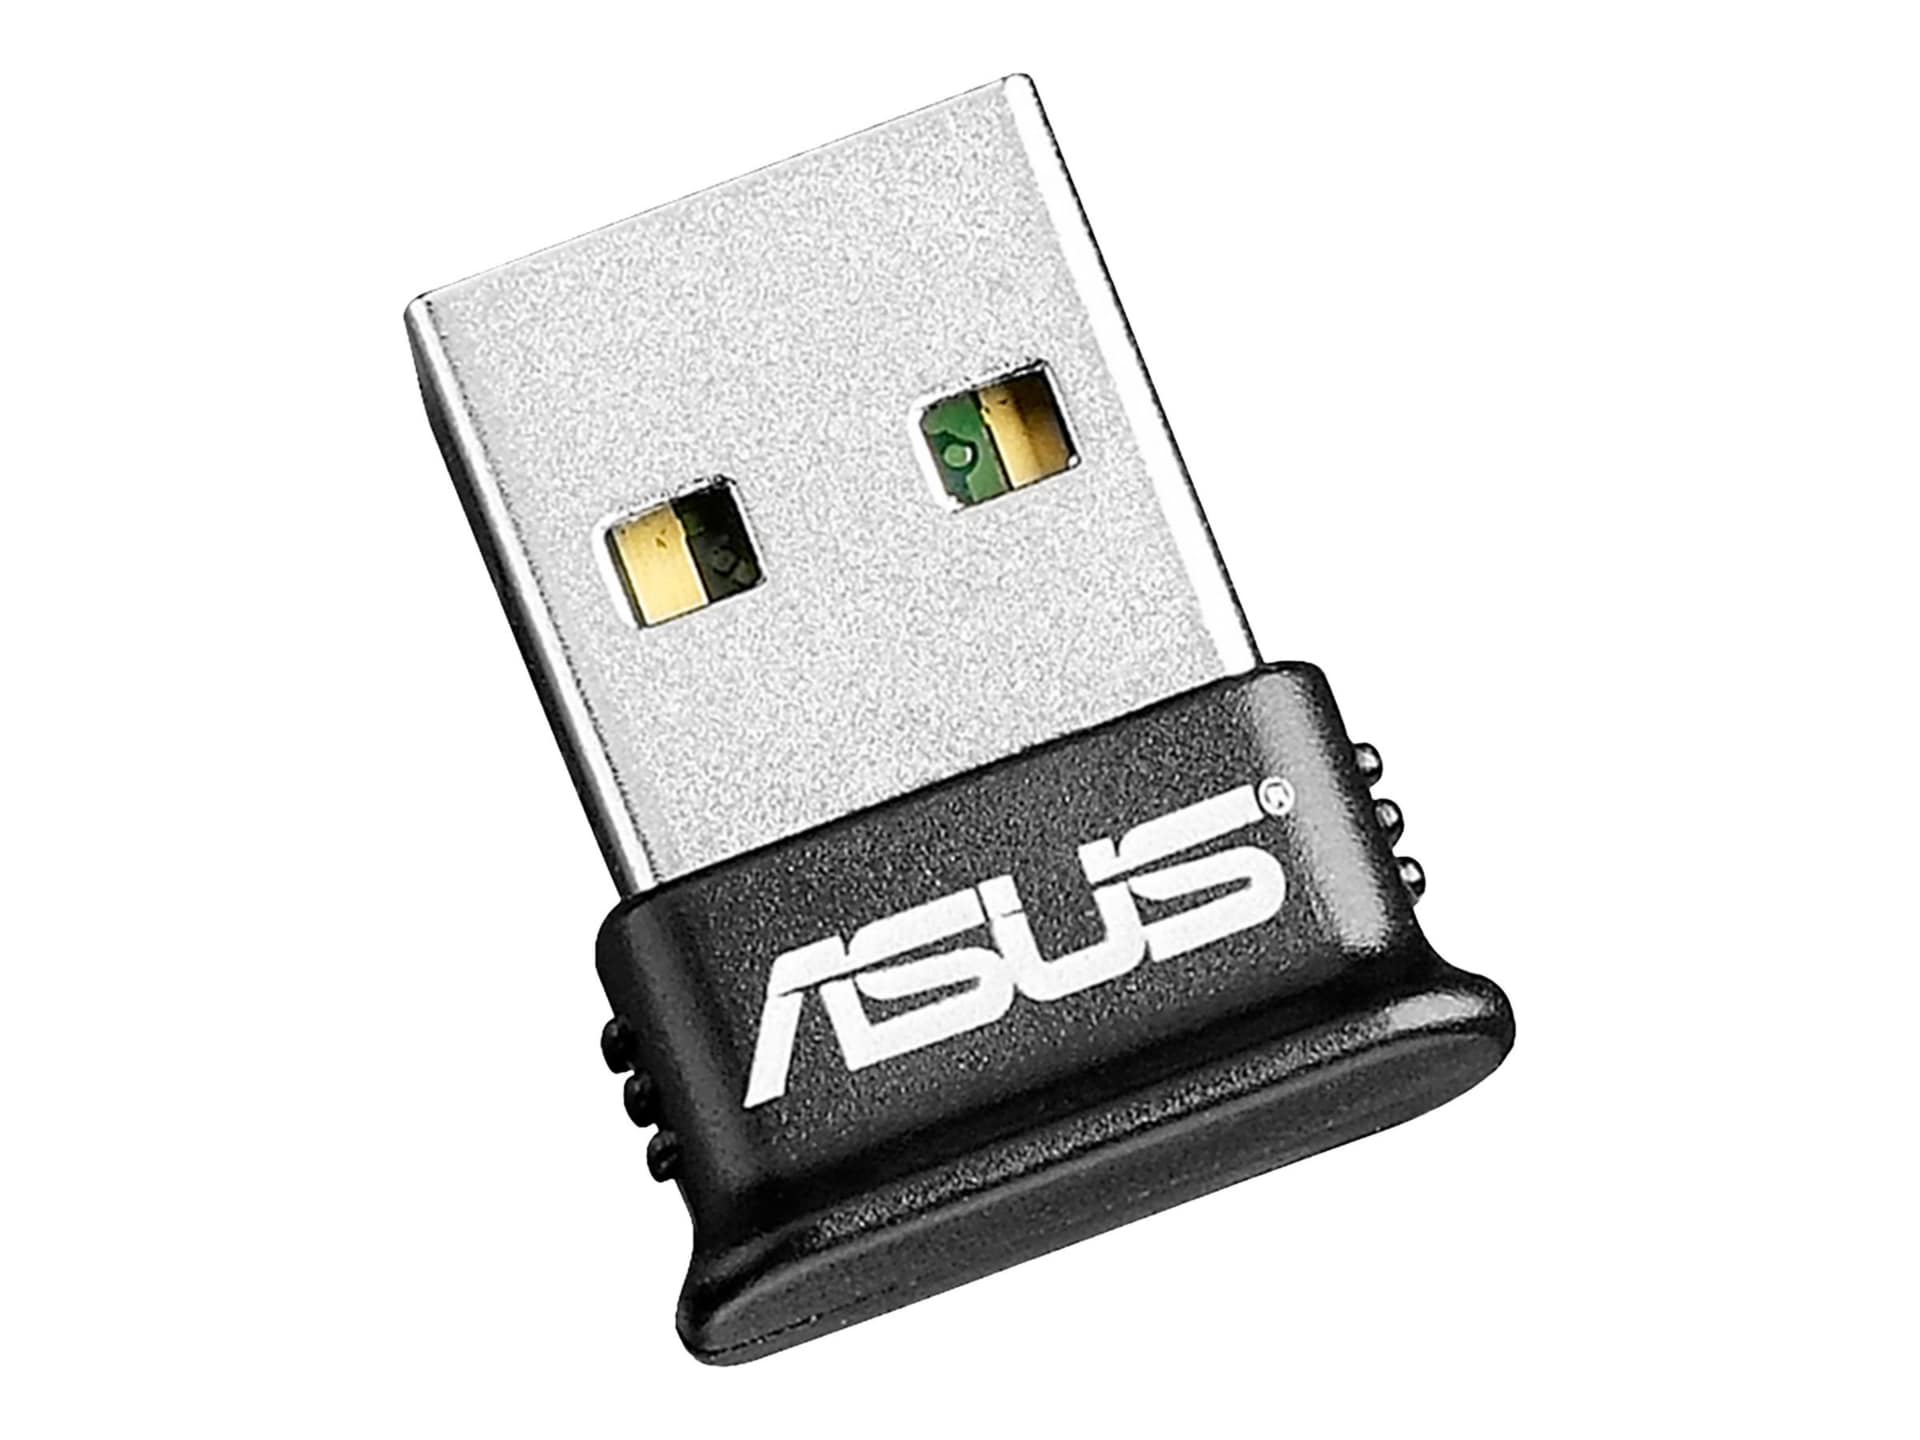 ASUS USB-BT400 - network adapter - USB - USB-BT400 Storage Mounts & Enclosures - CDW.com